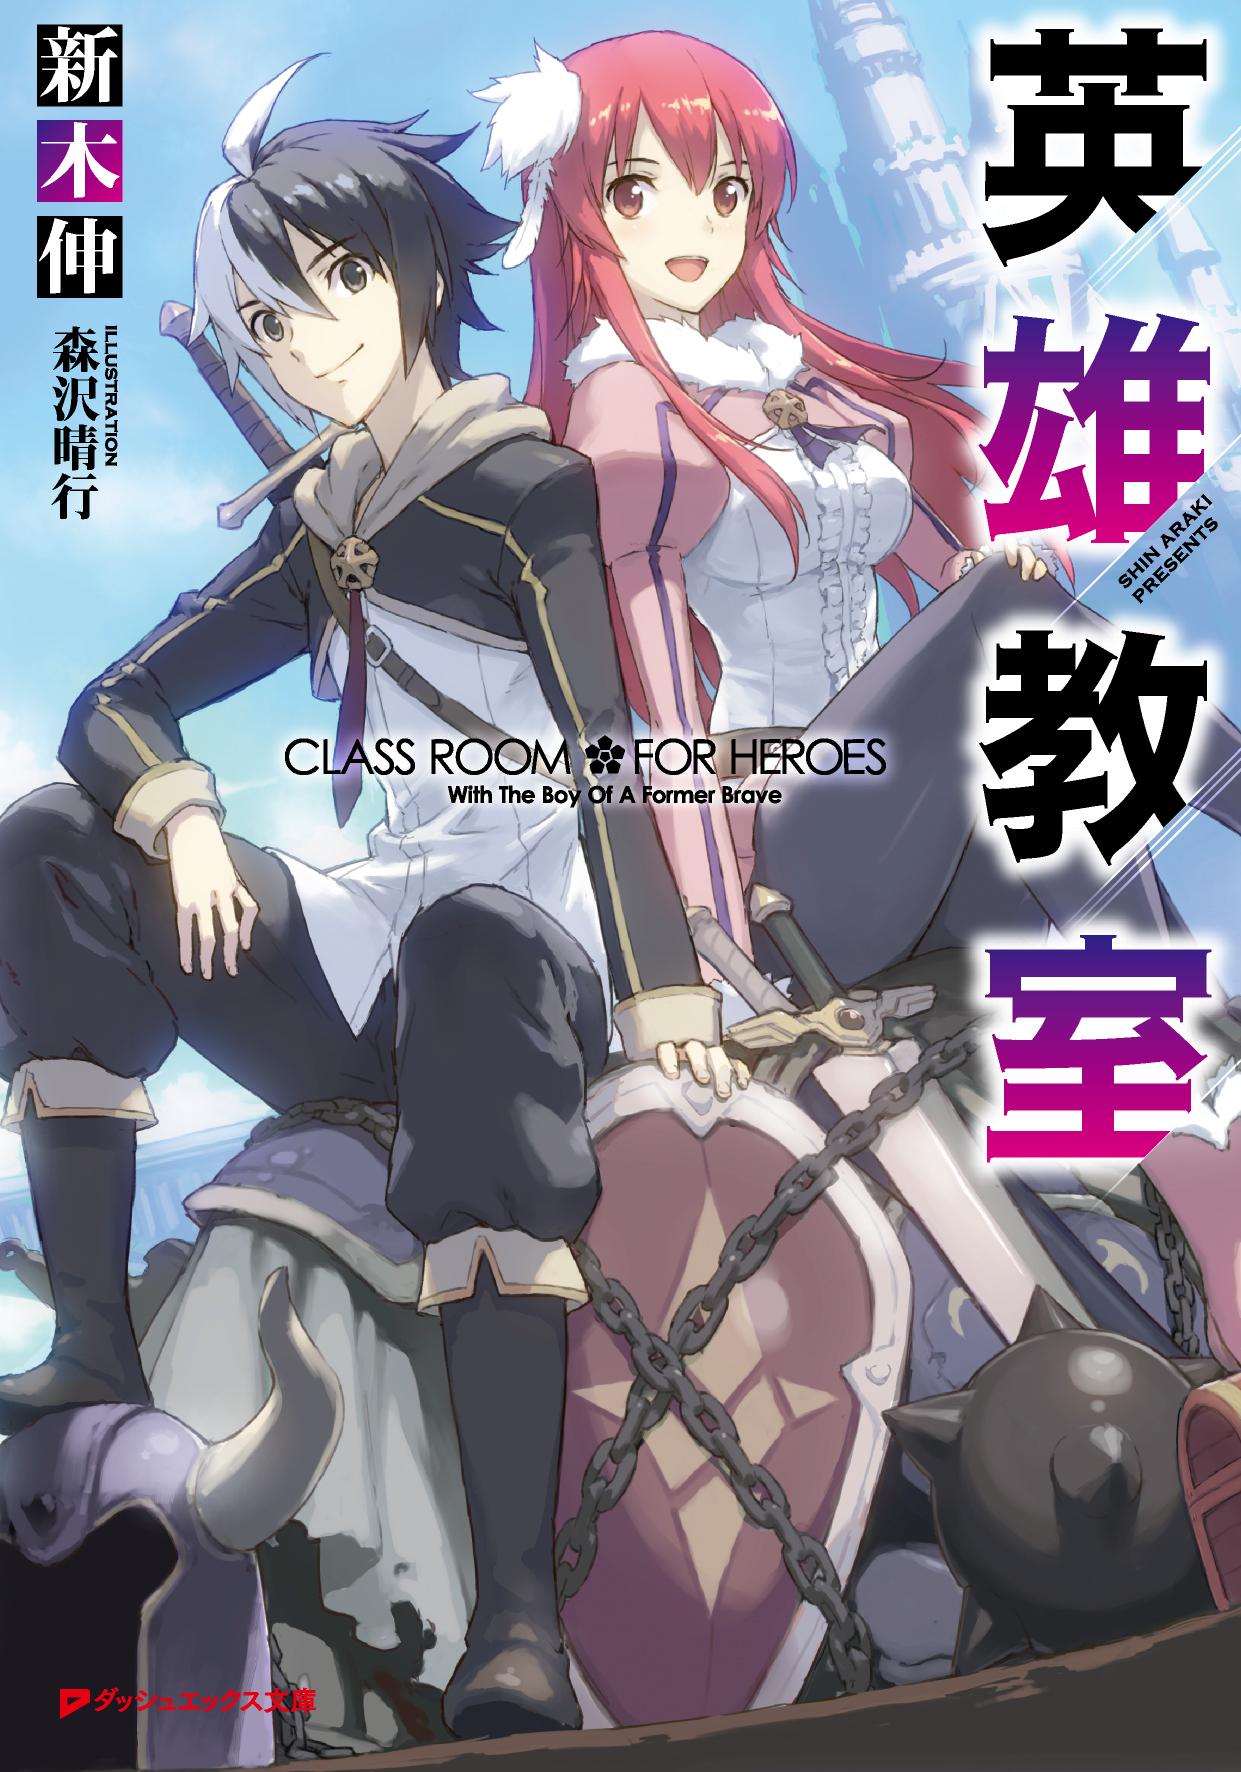 Eiyuu Kyoushitsu - Light novel de fantasia sobre academia de heróis terá anime